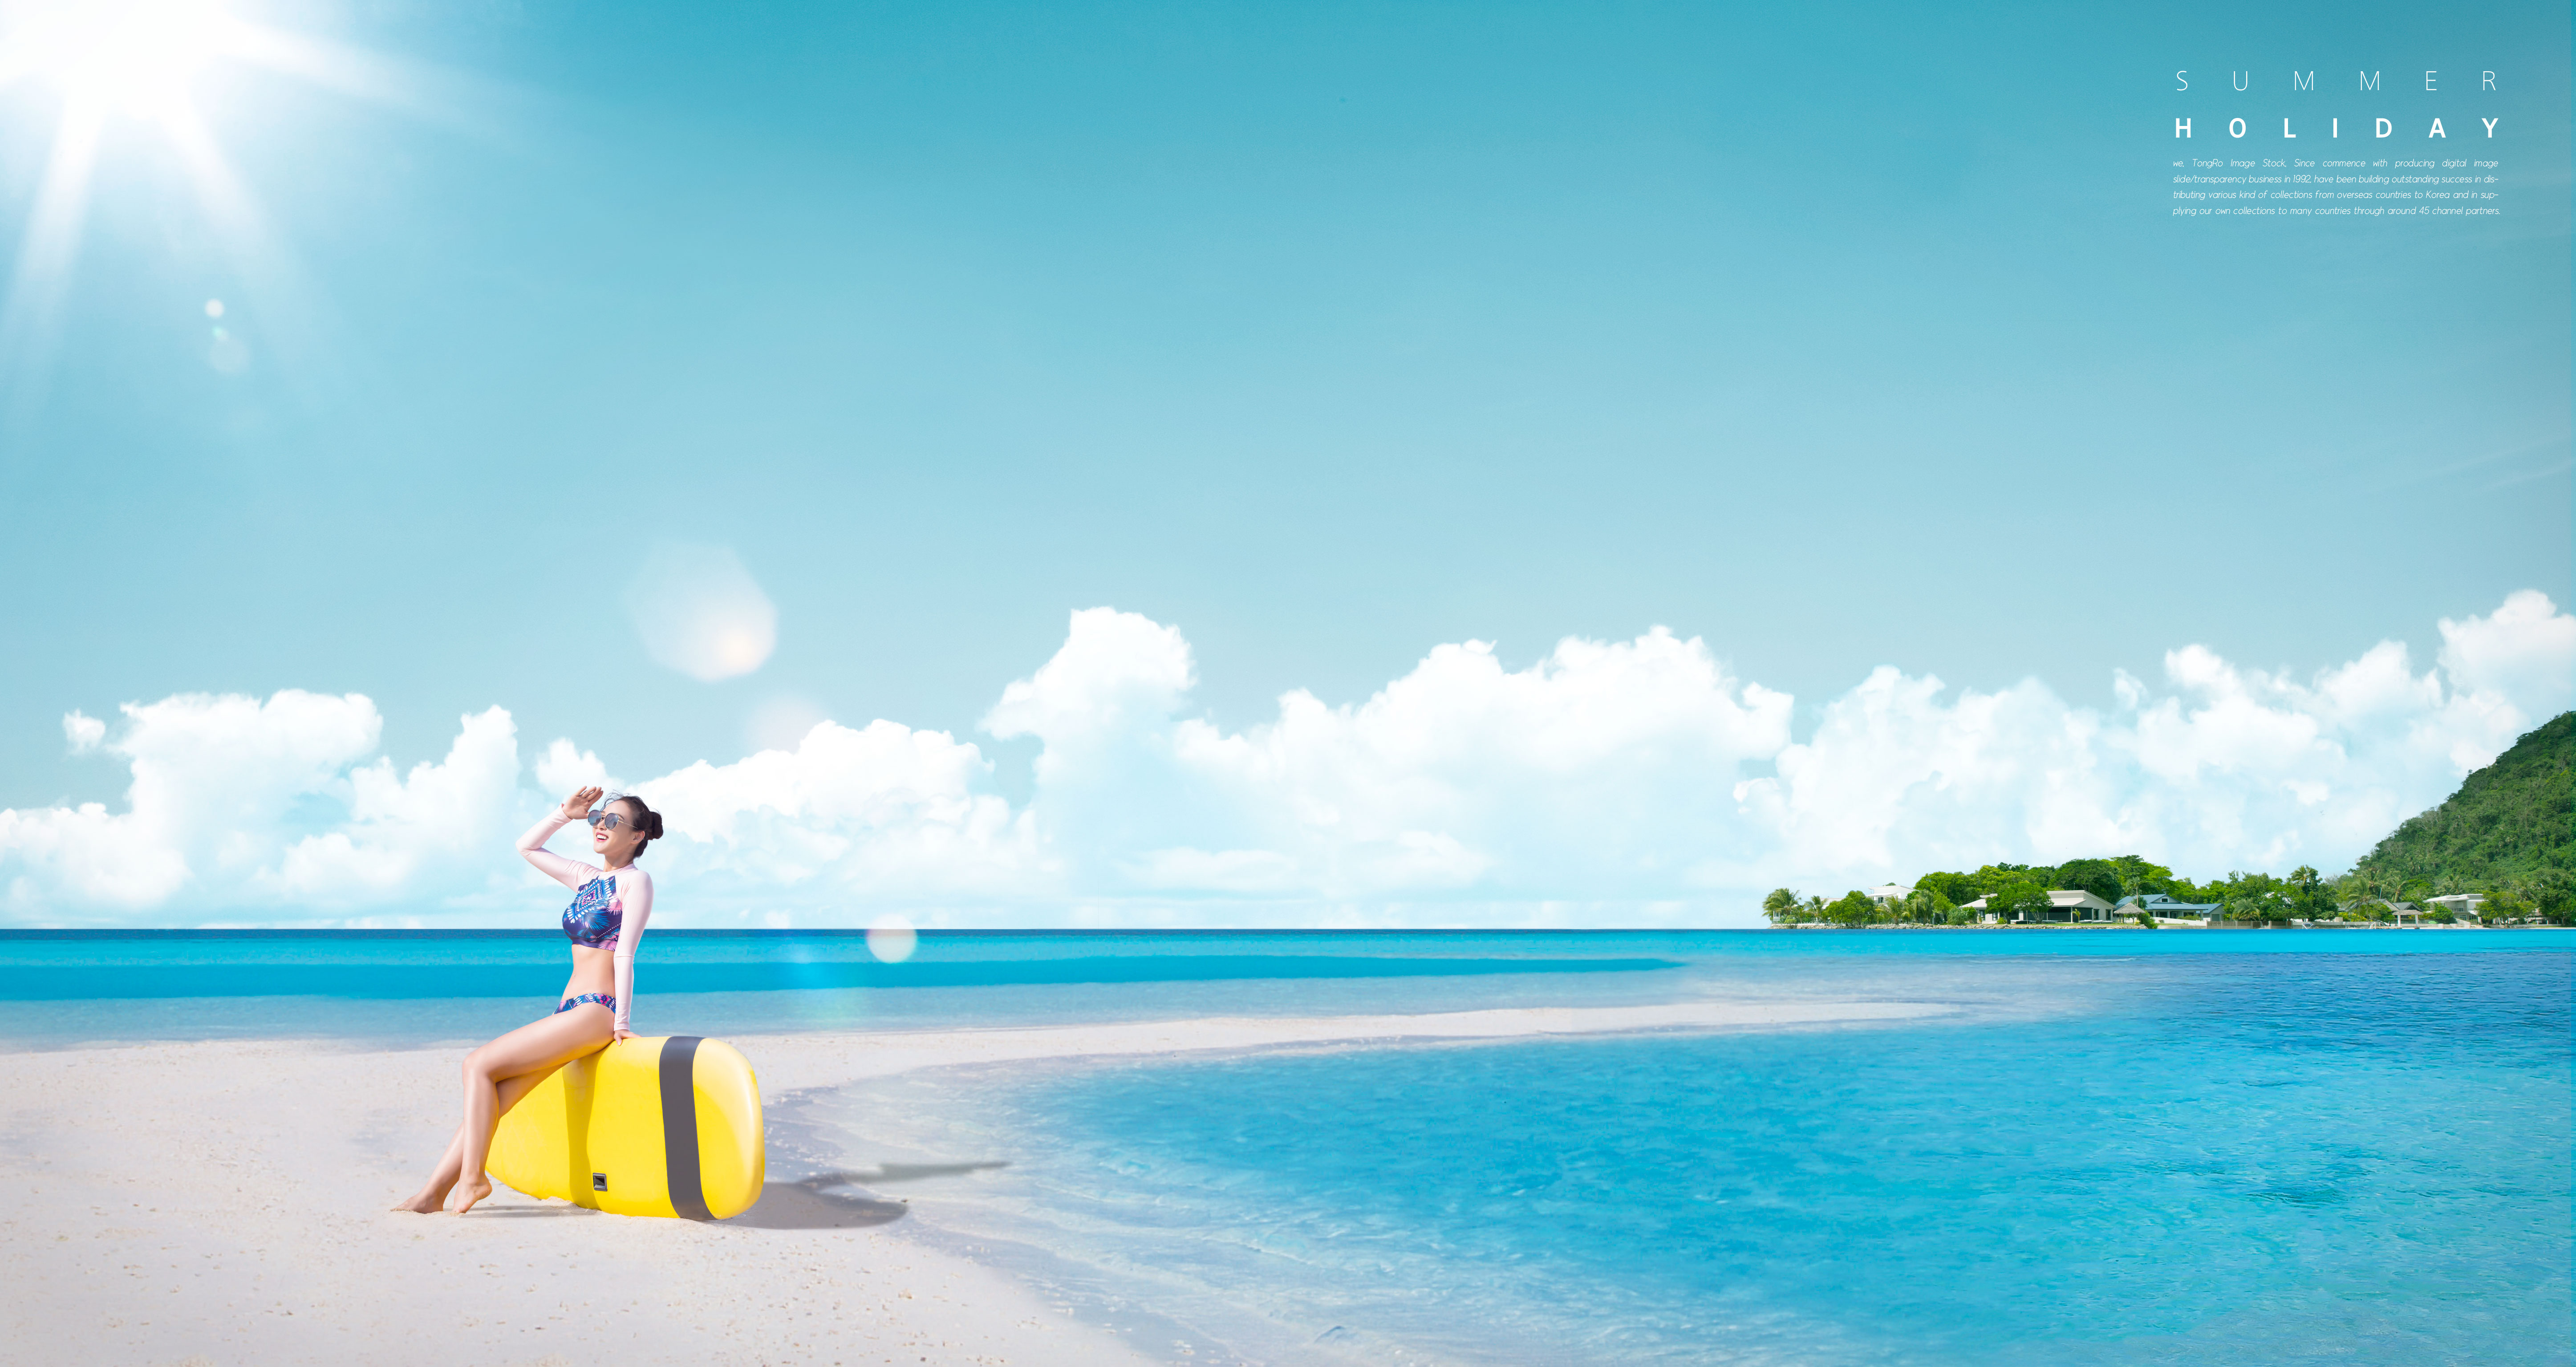 夏季海滩旅行度假活动广告海报模板套装[PSD]插图(3)